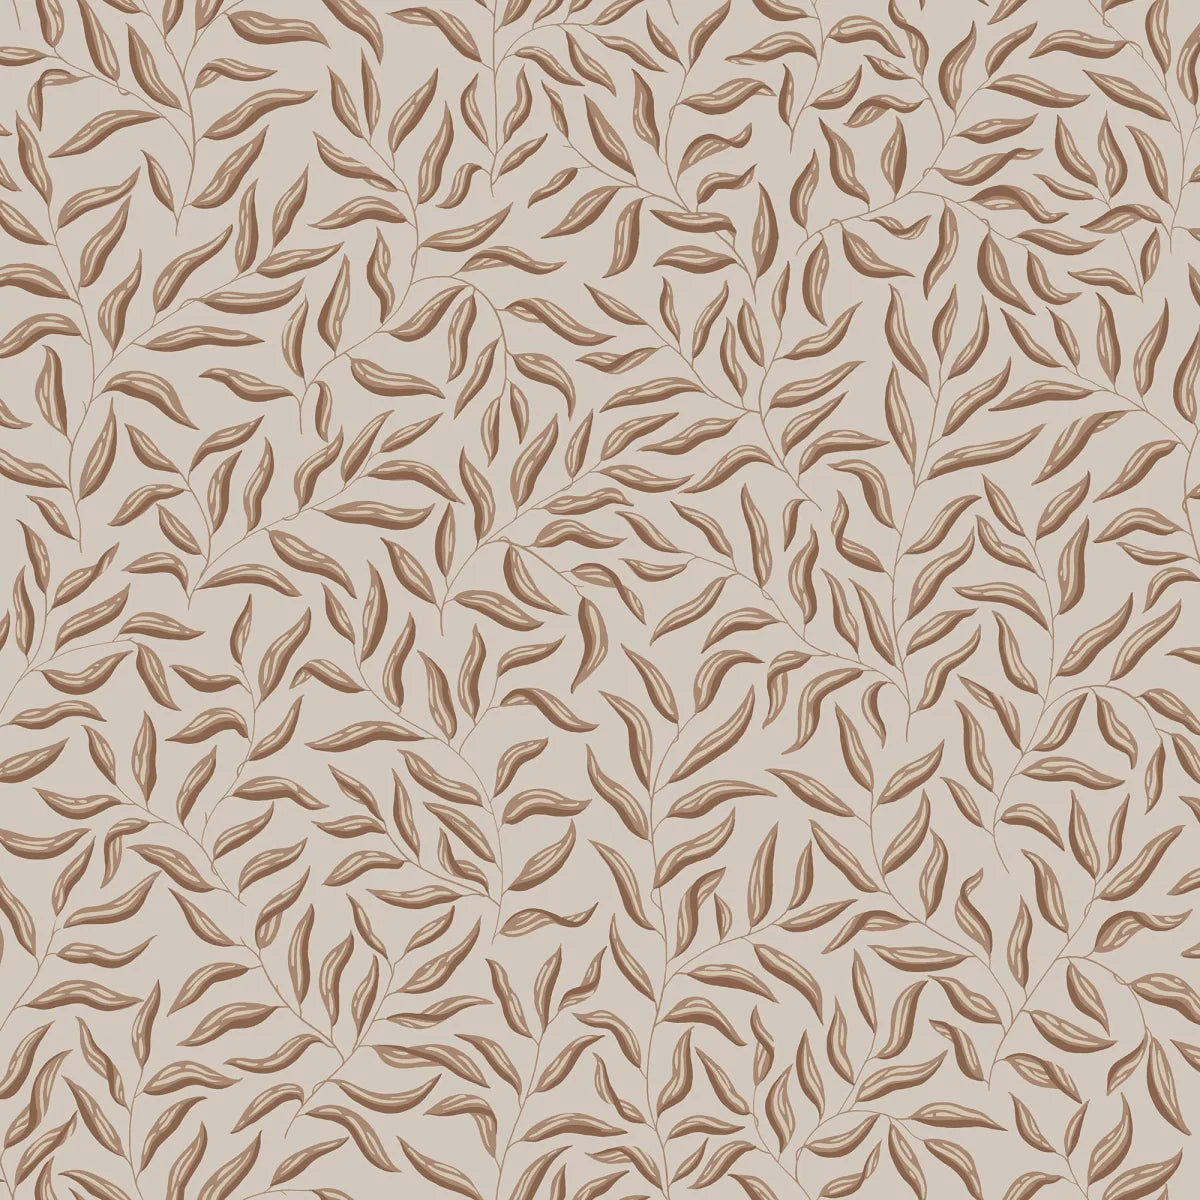 Wallpaper design Karolina, Hazel, comes in contemporary warm brown tones.